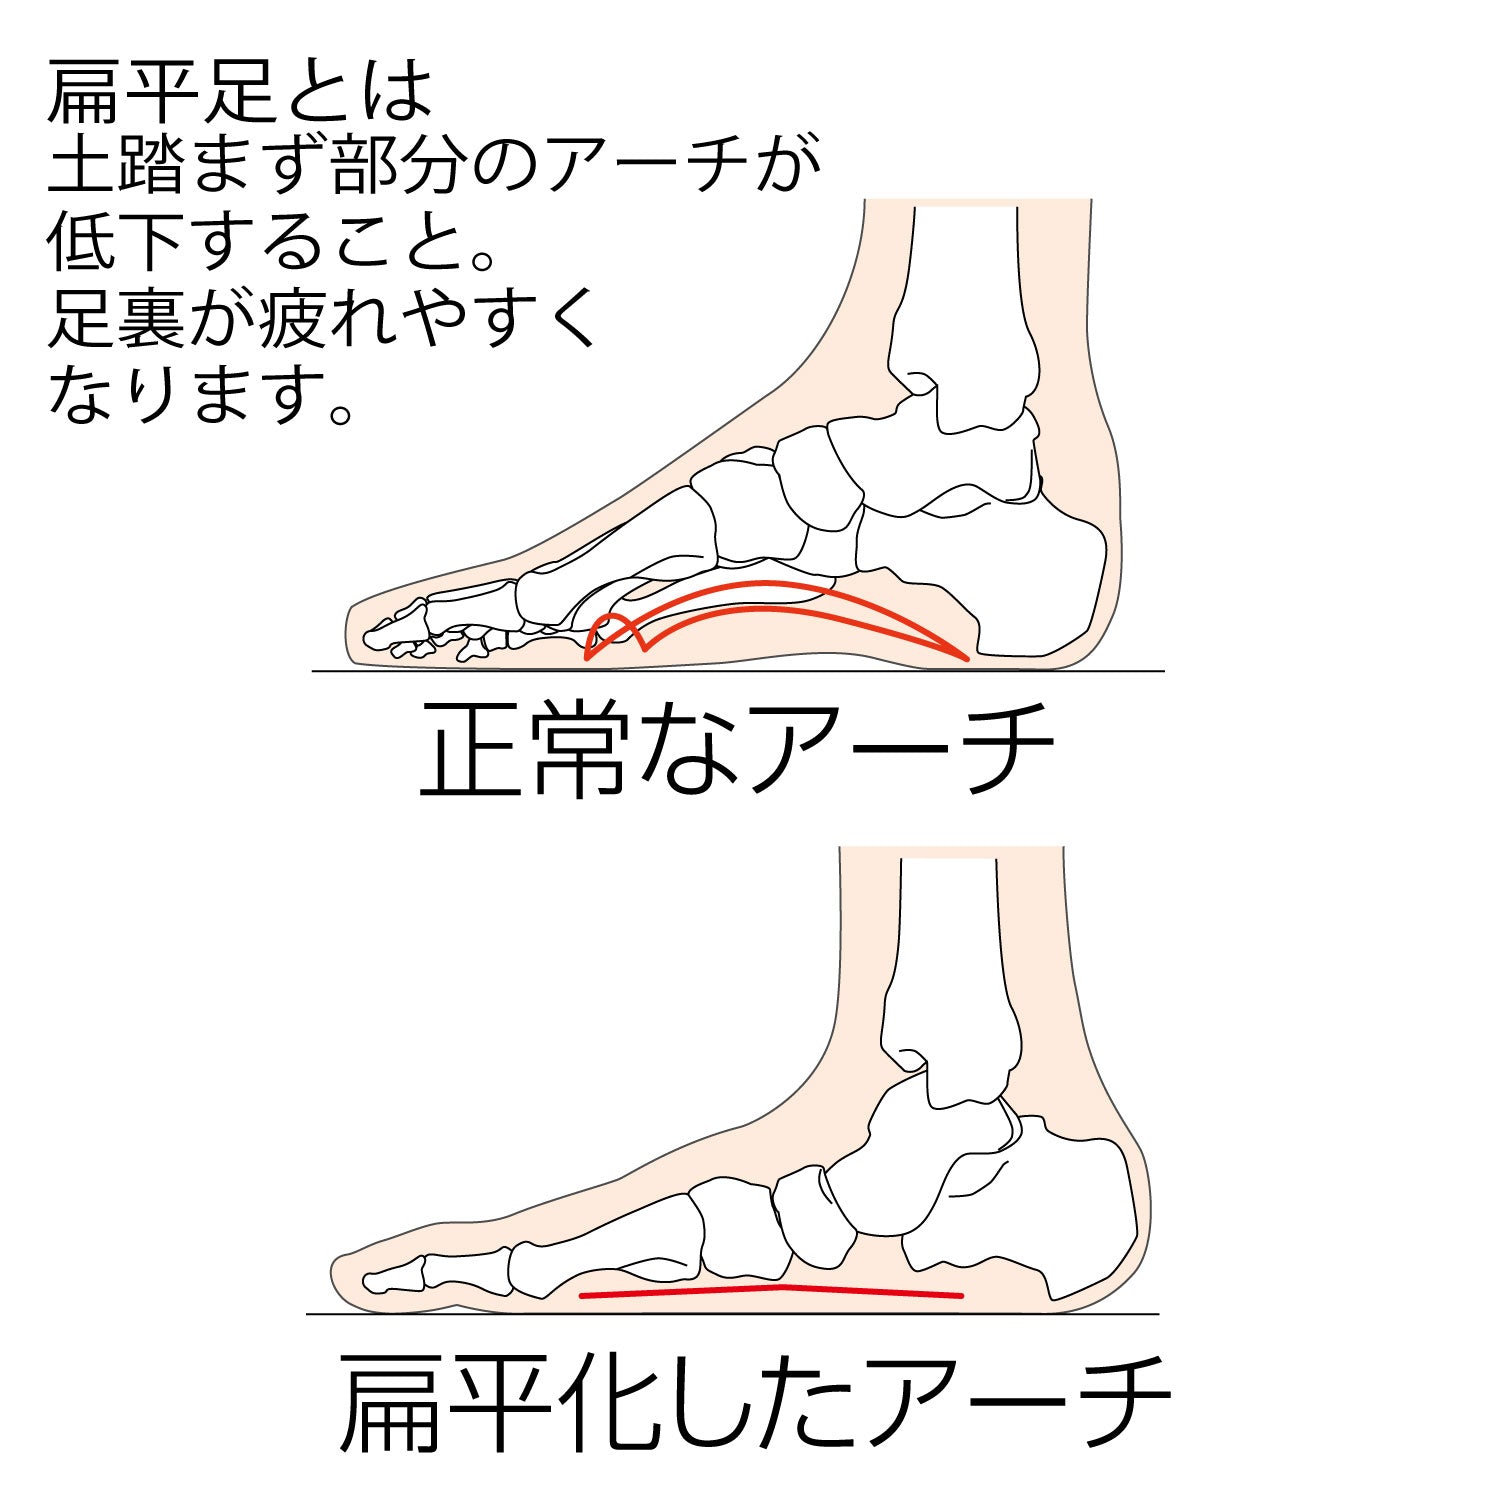 扁平足とは土踏まず部分のアーチが低下することです。足裏が疲れやすくなります